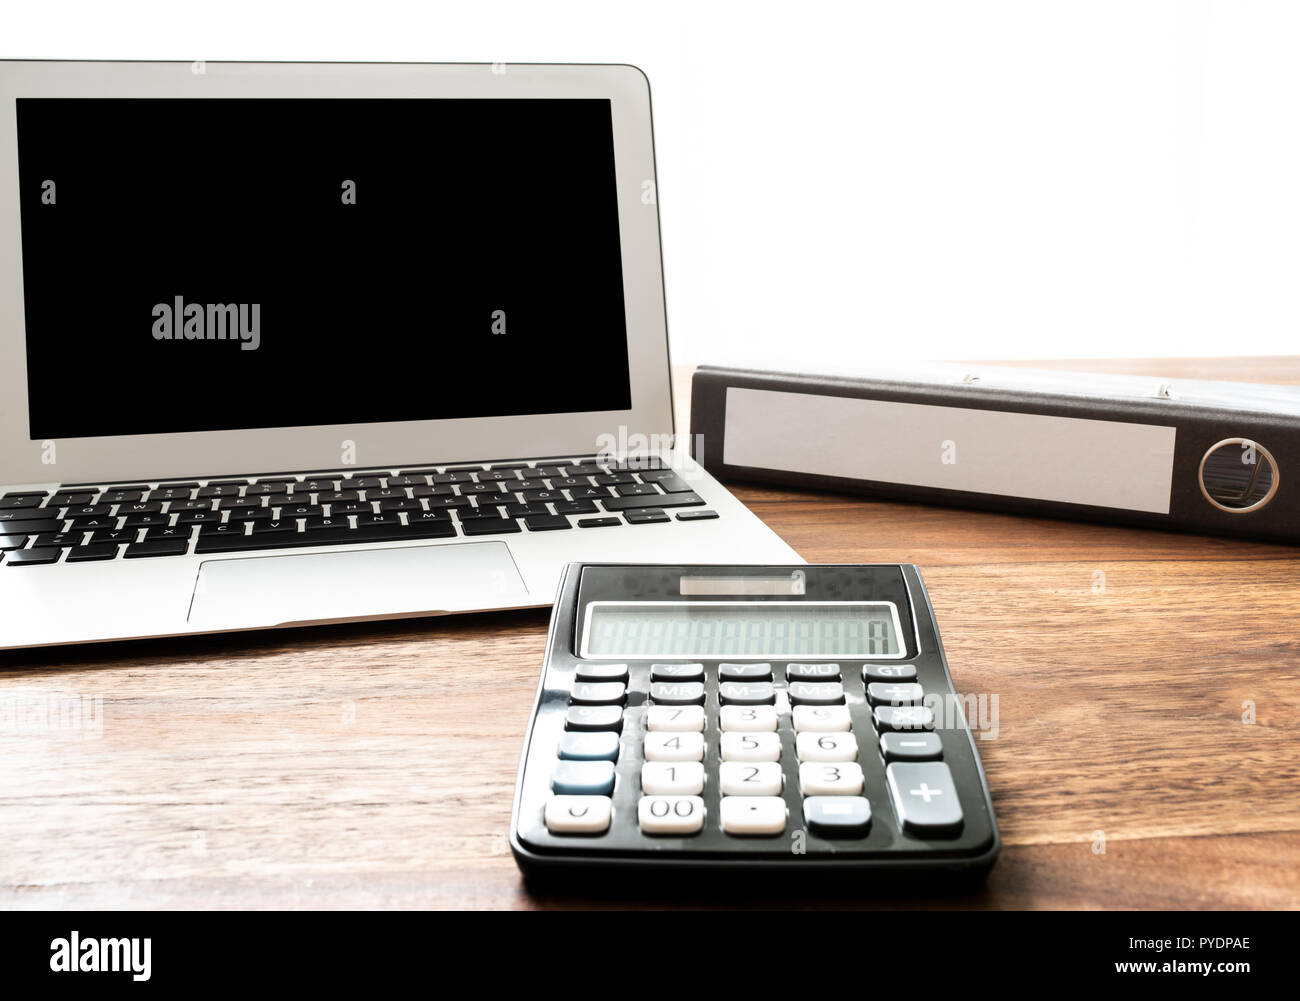 Basso angolo vista della calcolatrice, laptop e file cartella sulla scrivania in legno Foto Stock